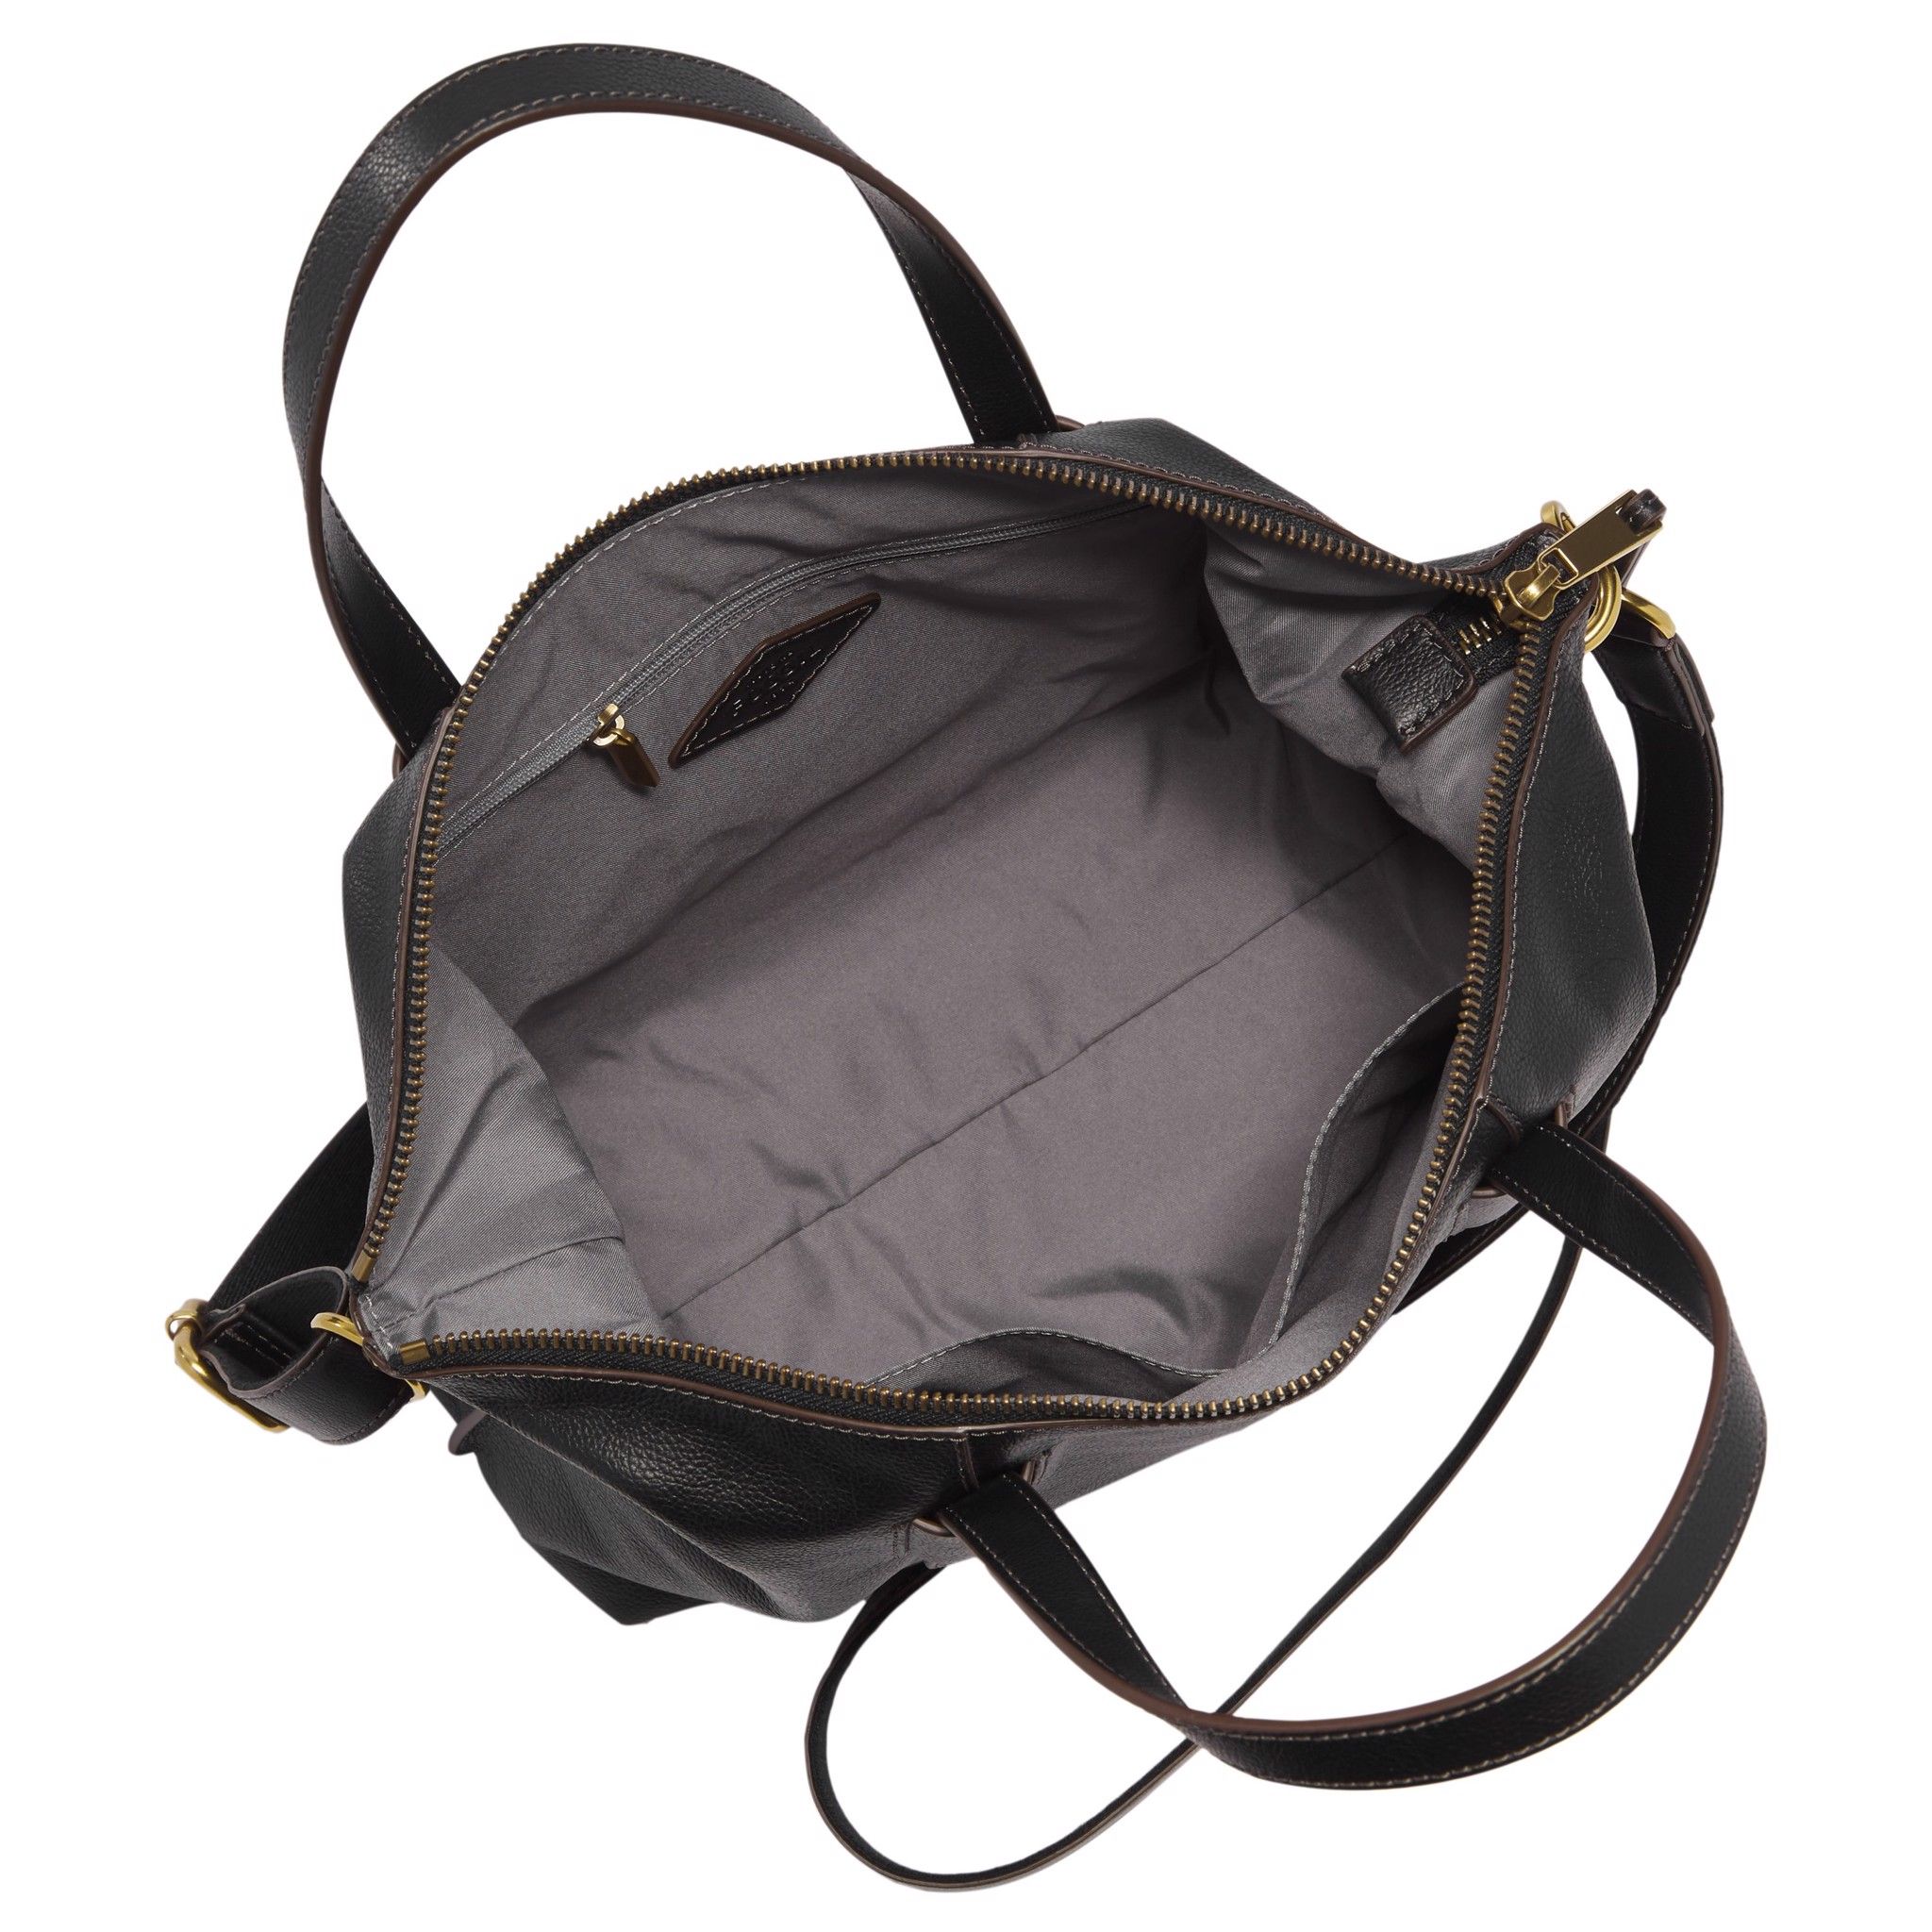  Túi đeo chéo nữ Fossil Skylar Satchel Bag SHB2657001 - màu đen 